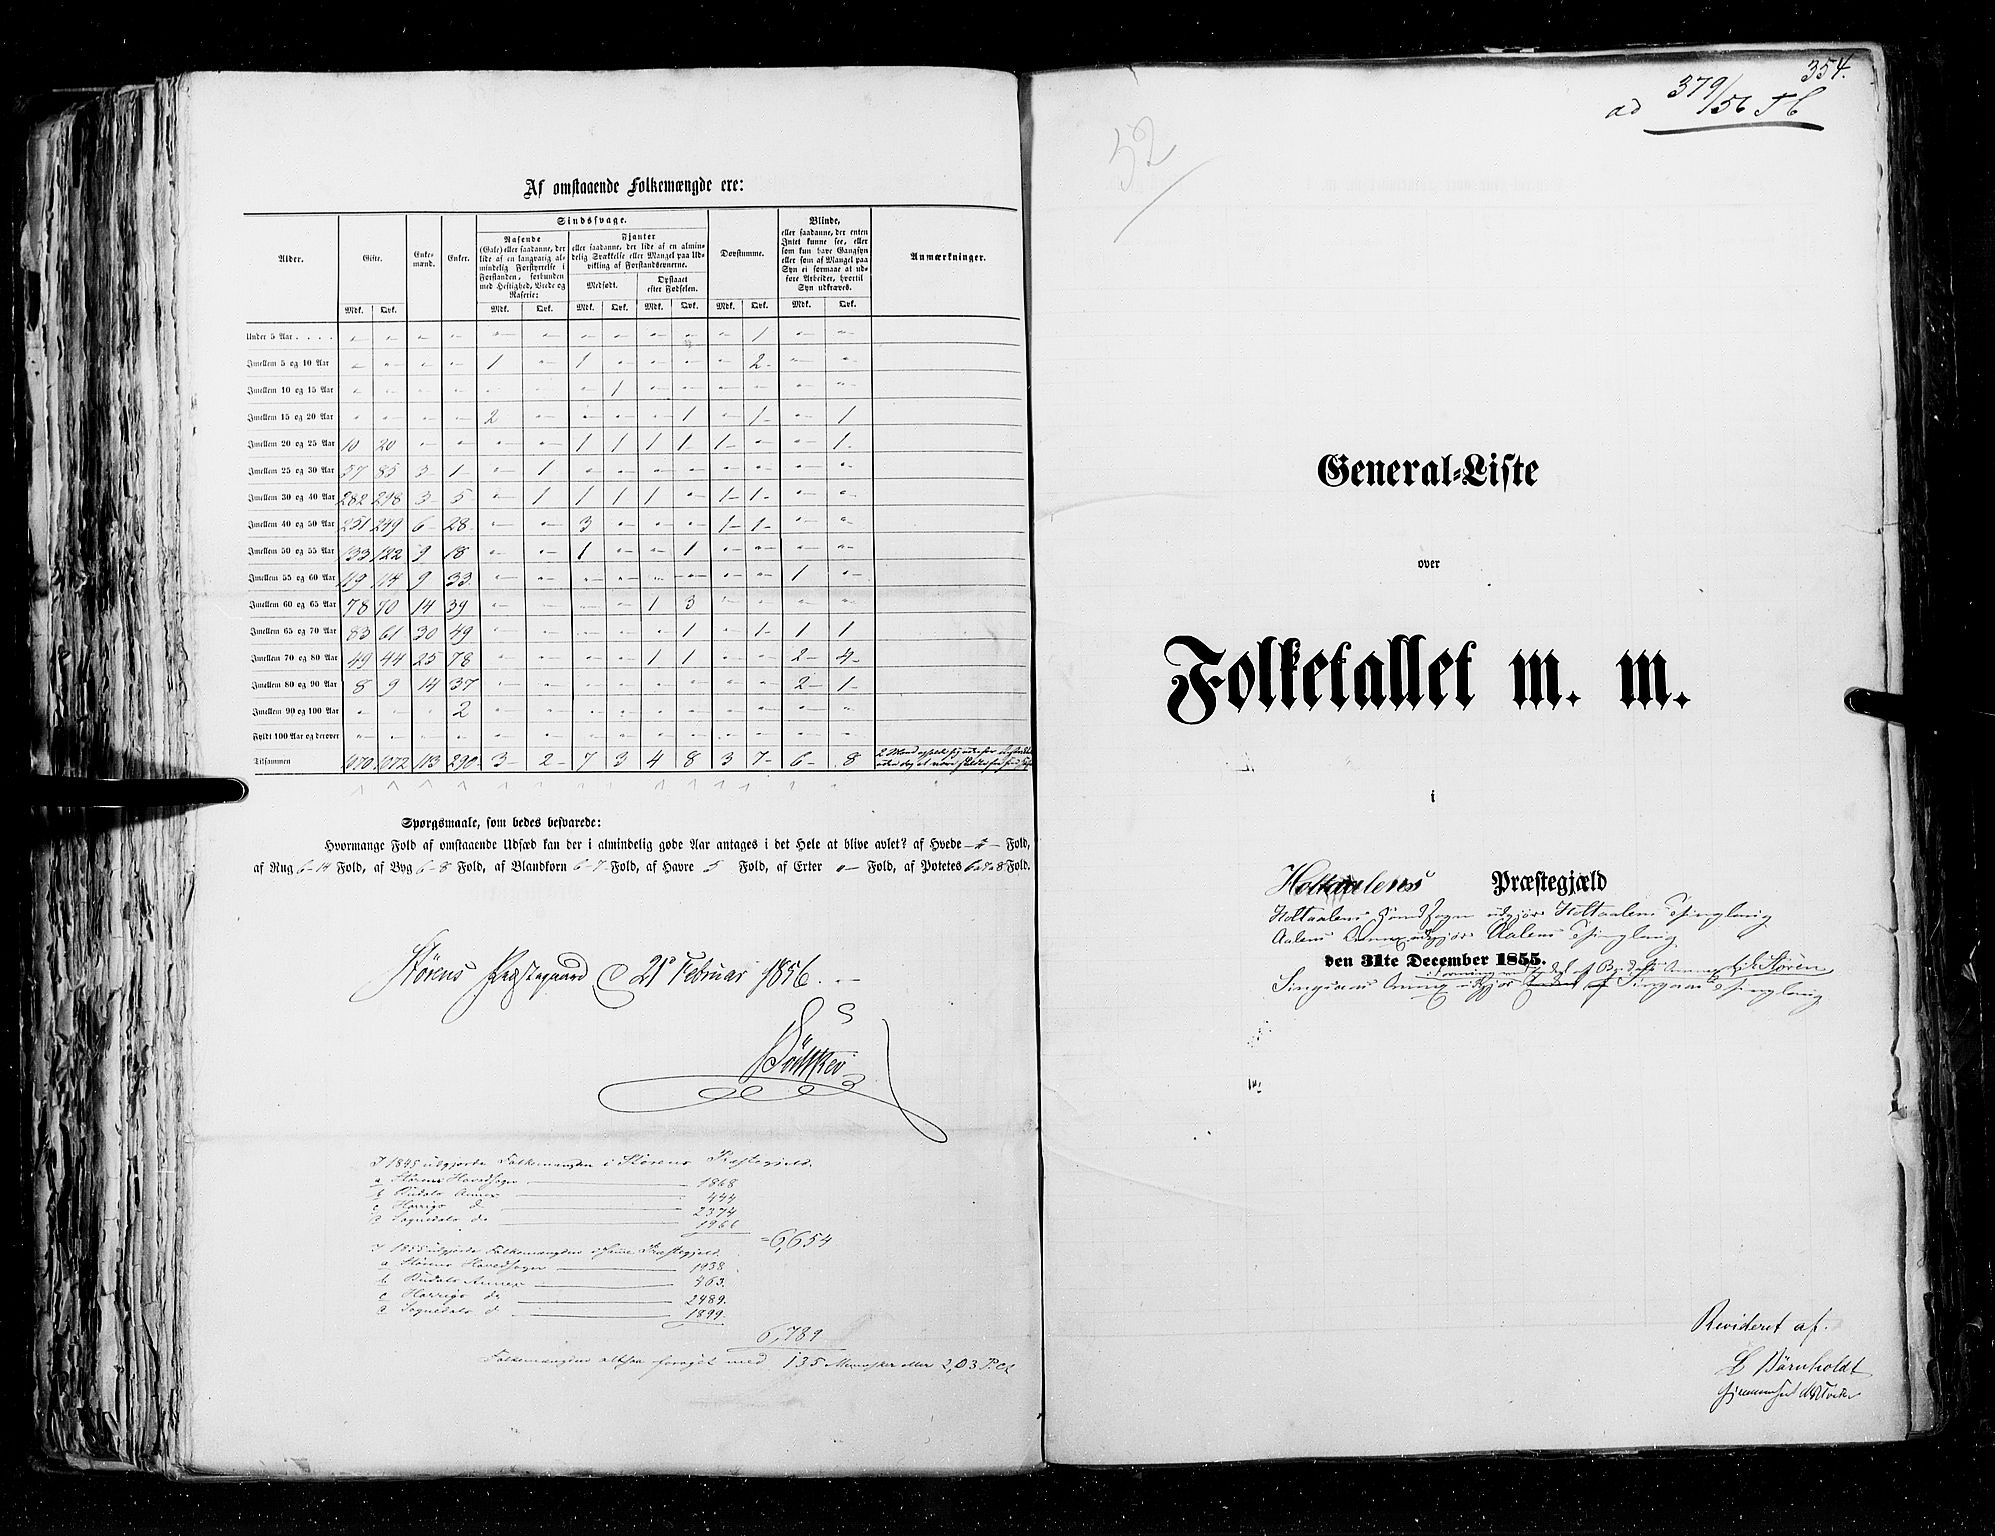 RA, Folketellingen 1855, bind 5: Nordre Bergenhus amt, Romsdal amt og Søndre Trondhjem amt, 1855, s. 354